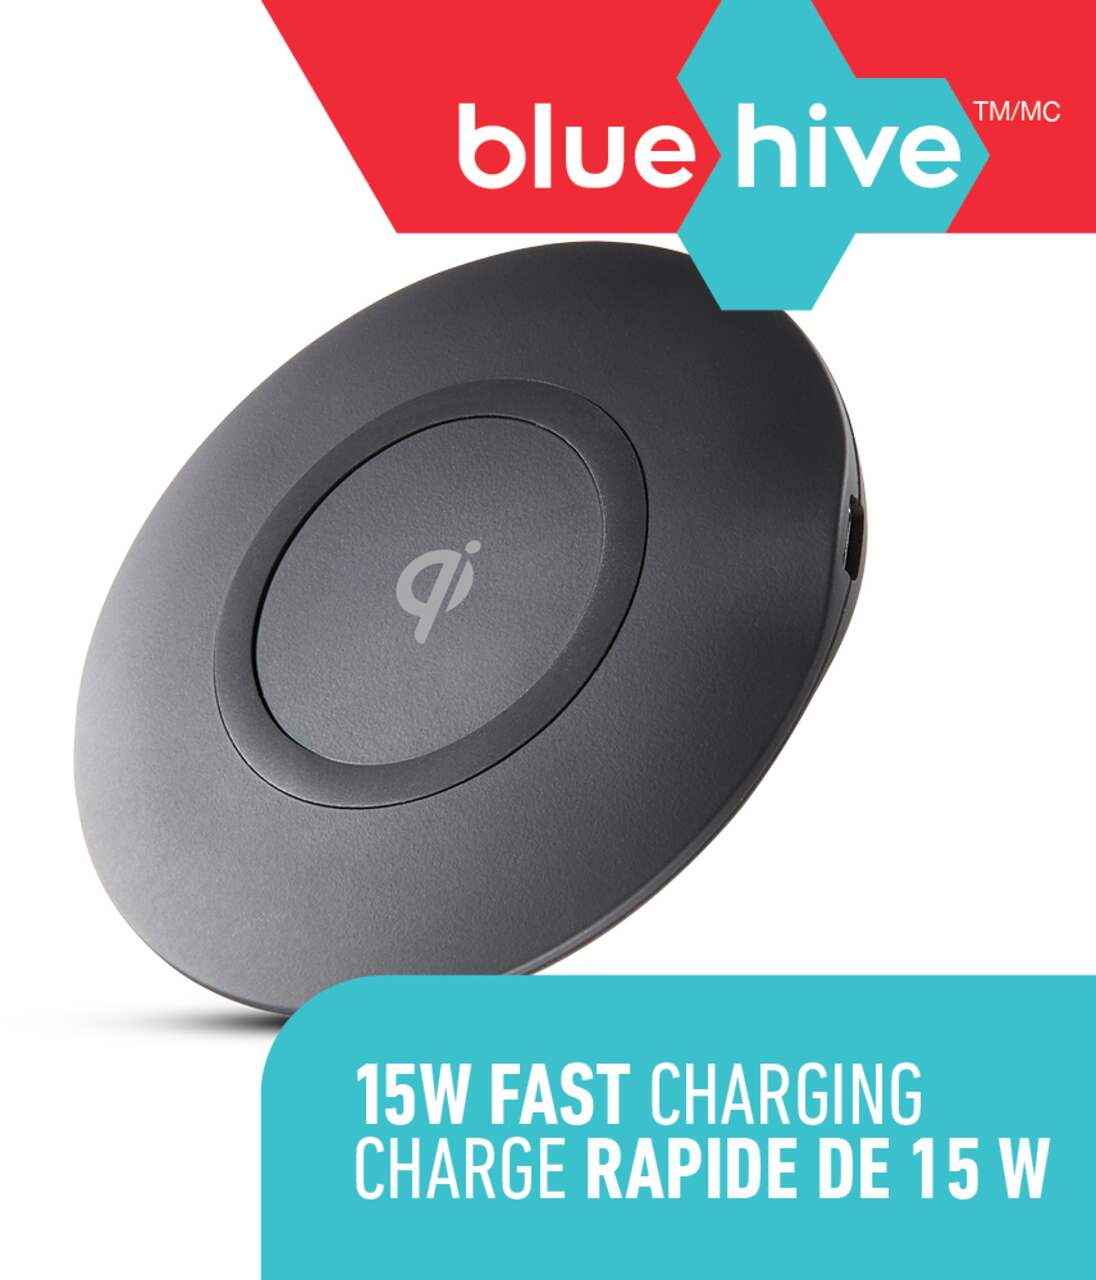 Bluehive - Chargeur sans fil compatible QI à charge rapide, 15W